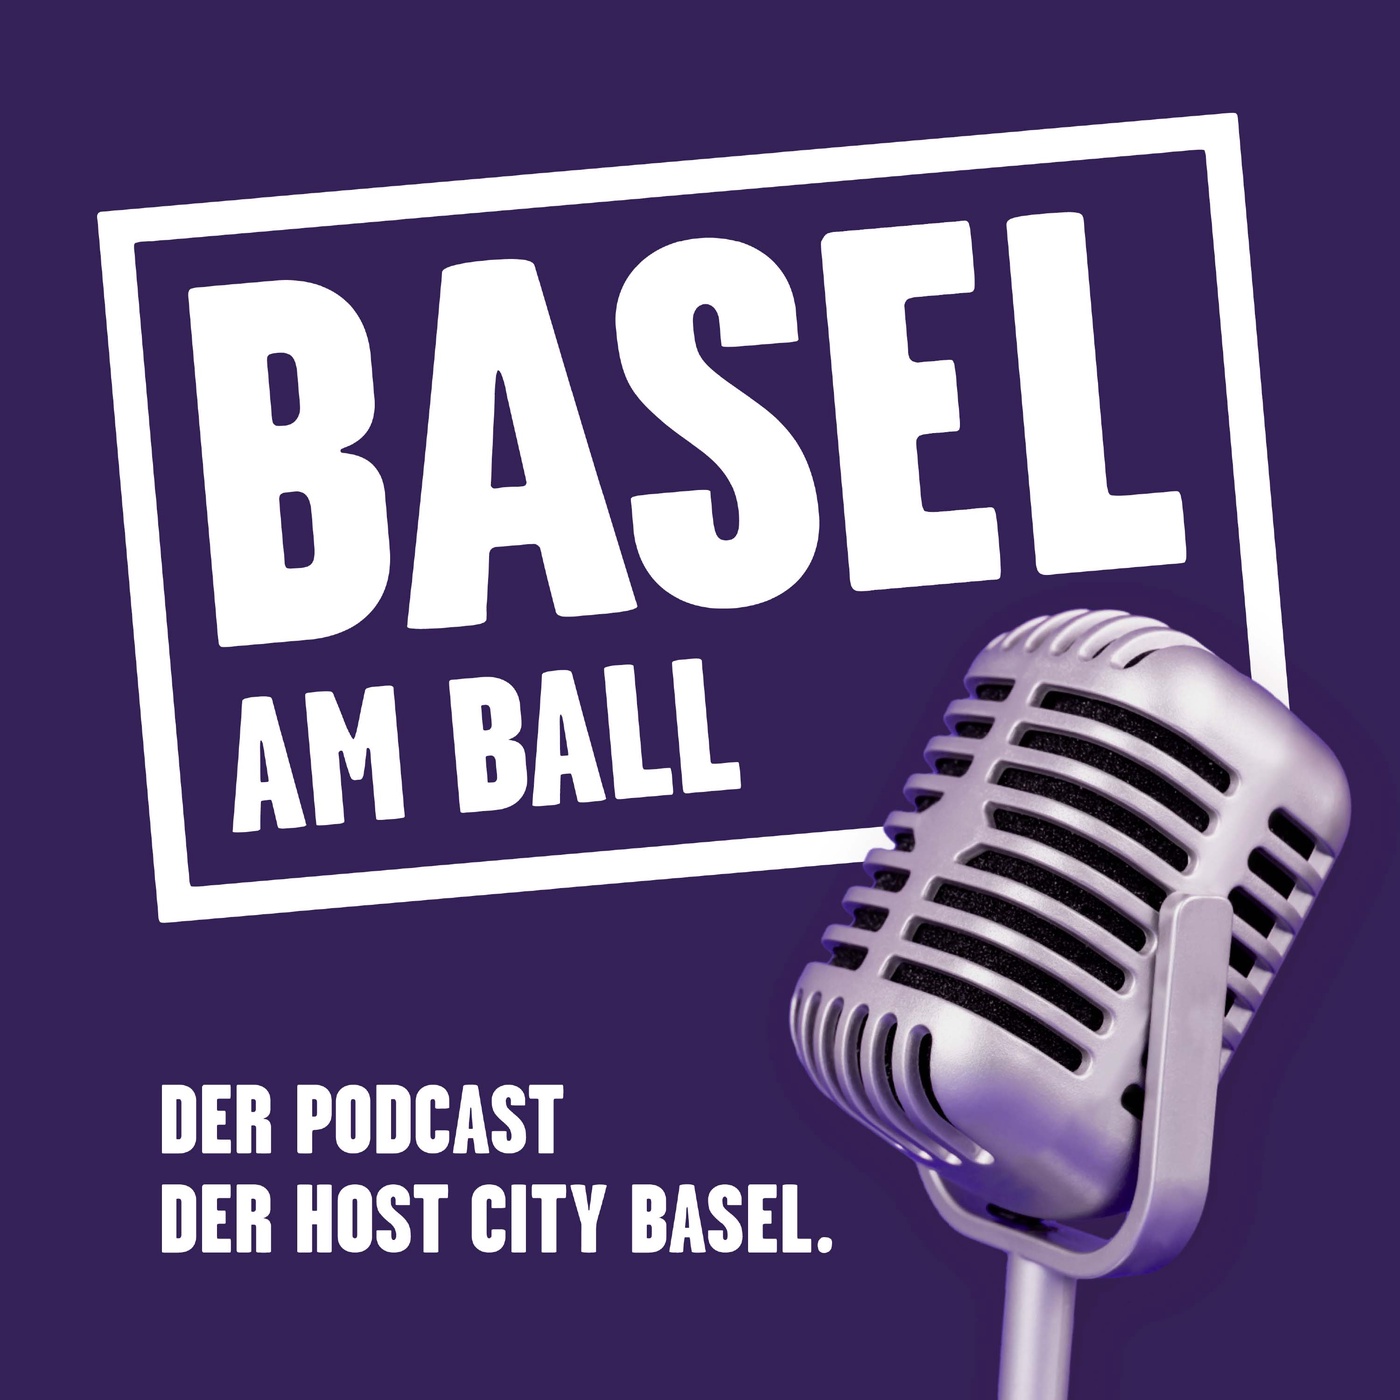 Basel am Ball